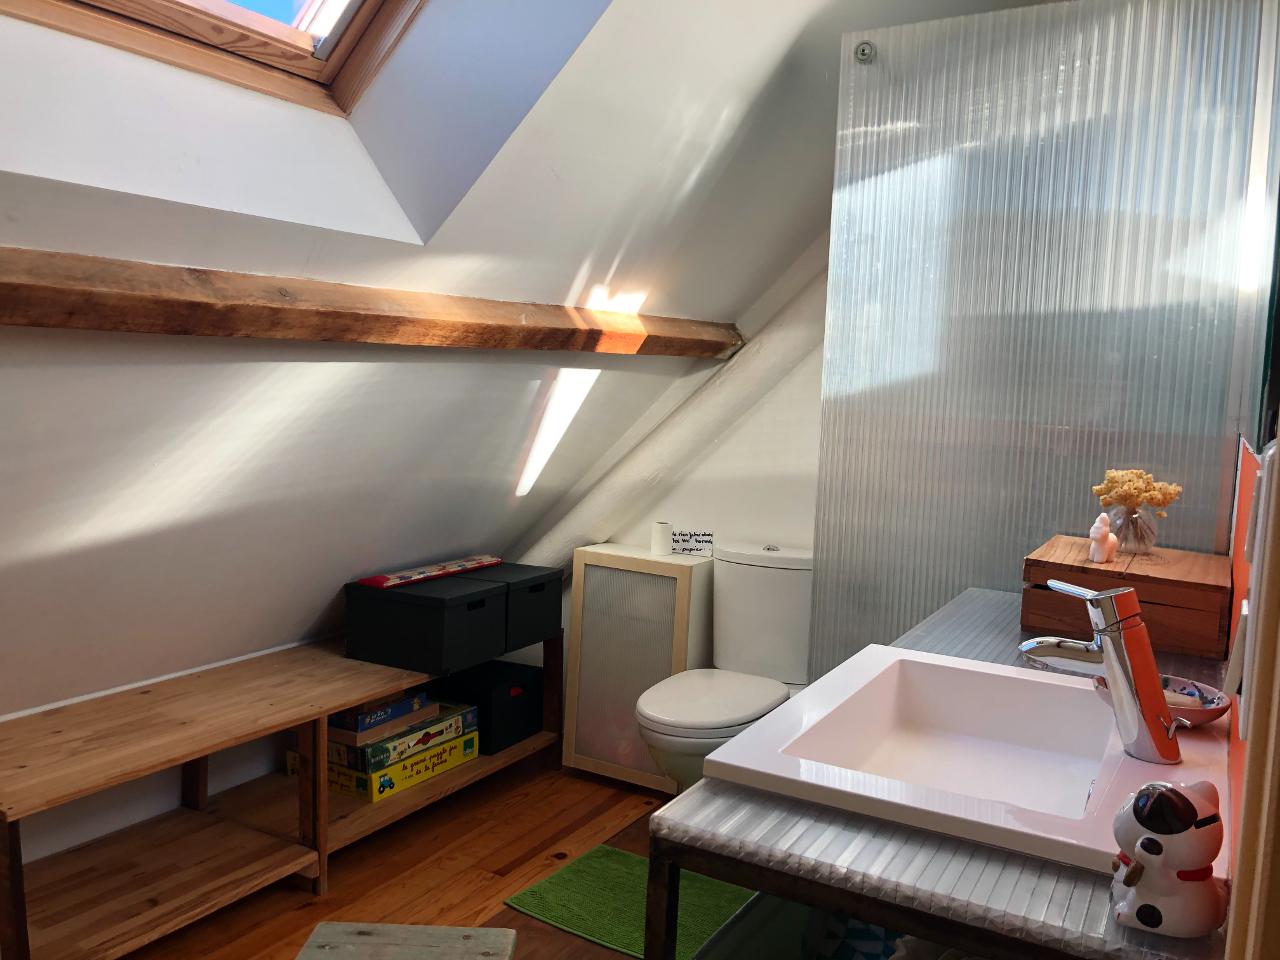 Hôte GreenGo: Chambres chez l'habitant dans un ancien cabanon marseillais - Image 13